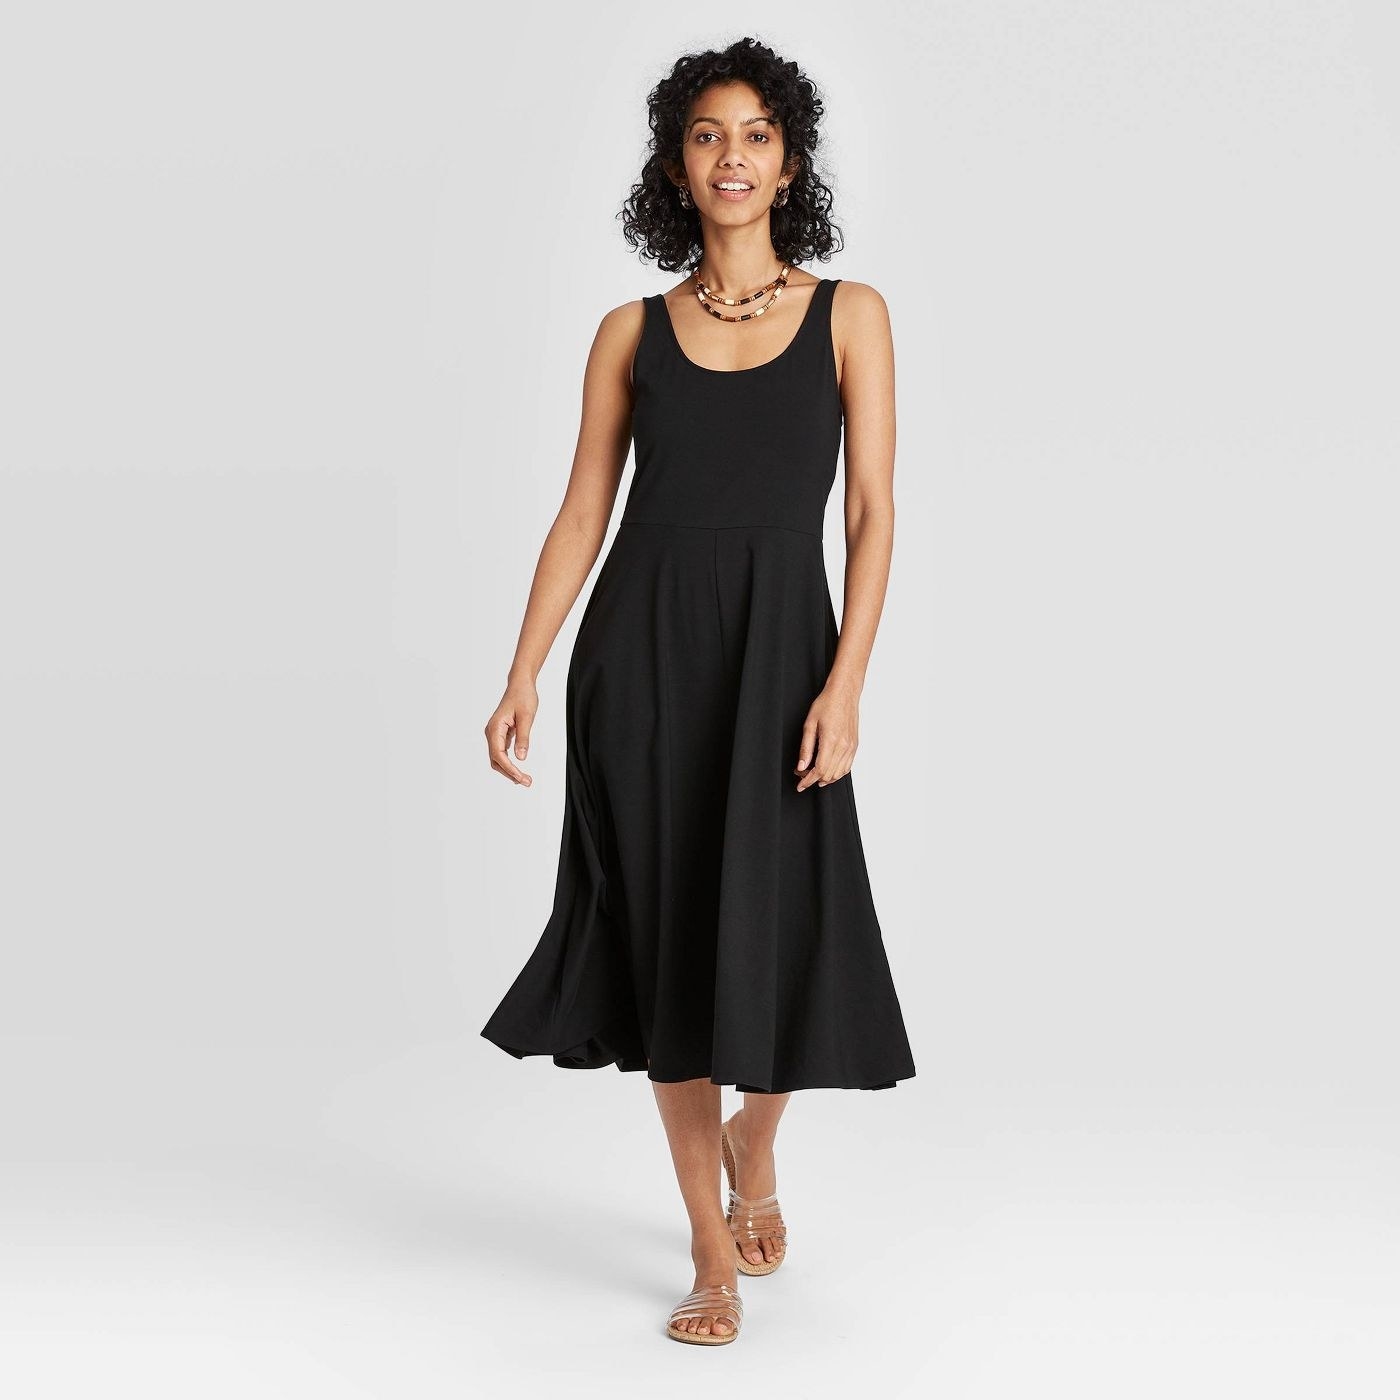 Model in flowy black midi dress